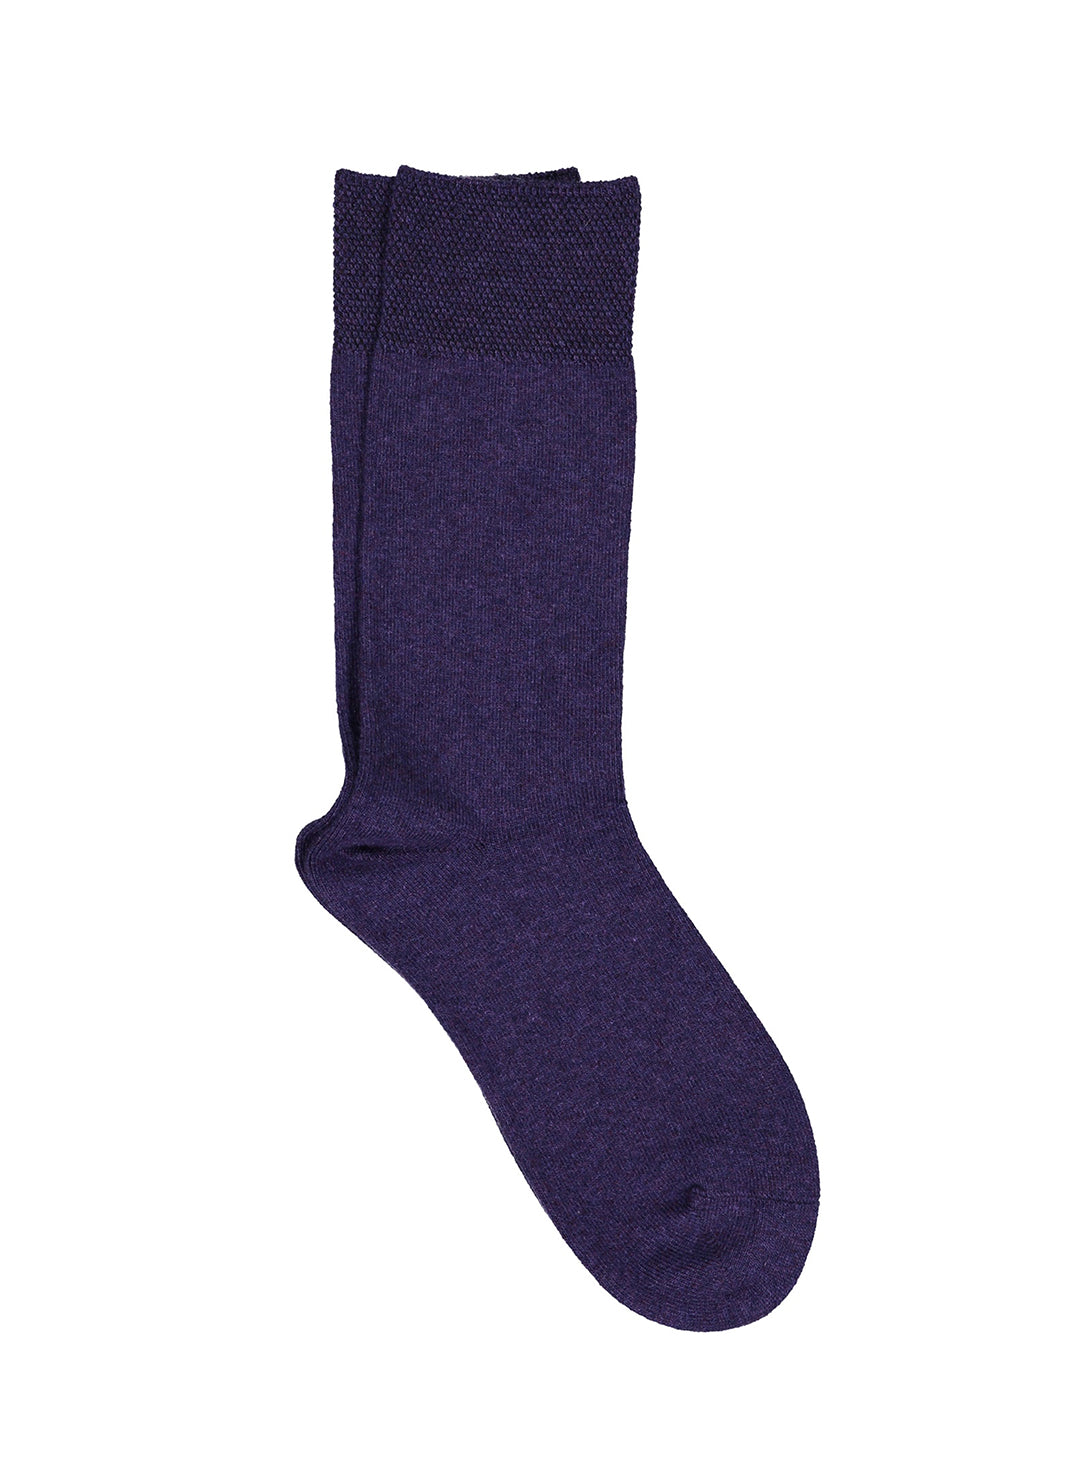 Nu-Novola Midnight Cashmere Socks